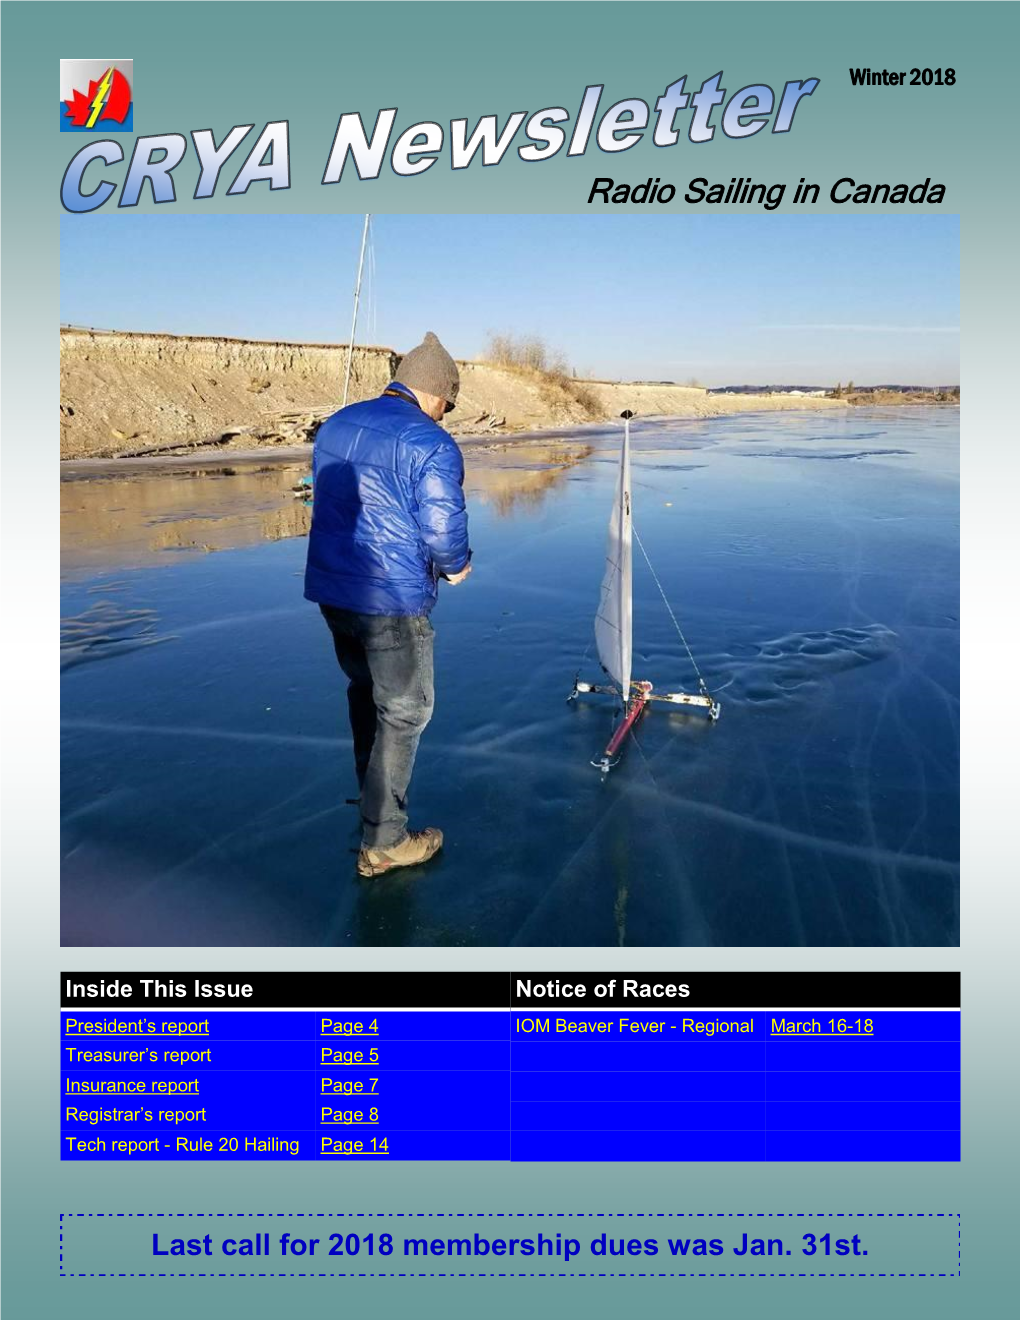 Radio Sailing in Canada